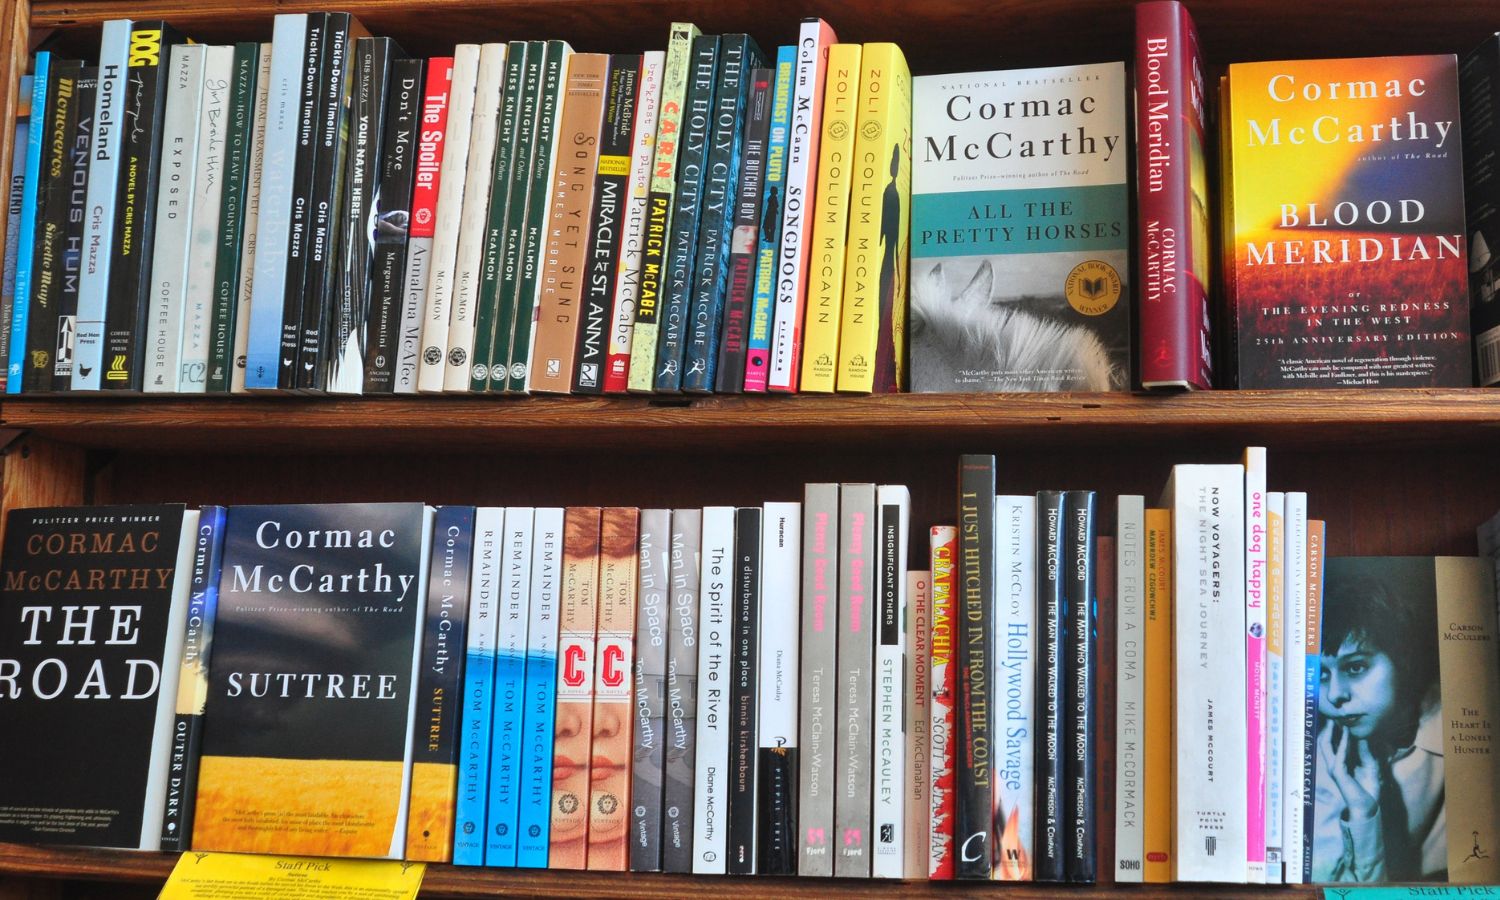 A bookshelf showing Cormac McCarthy books.